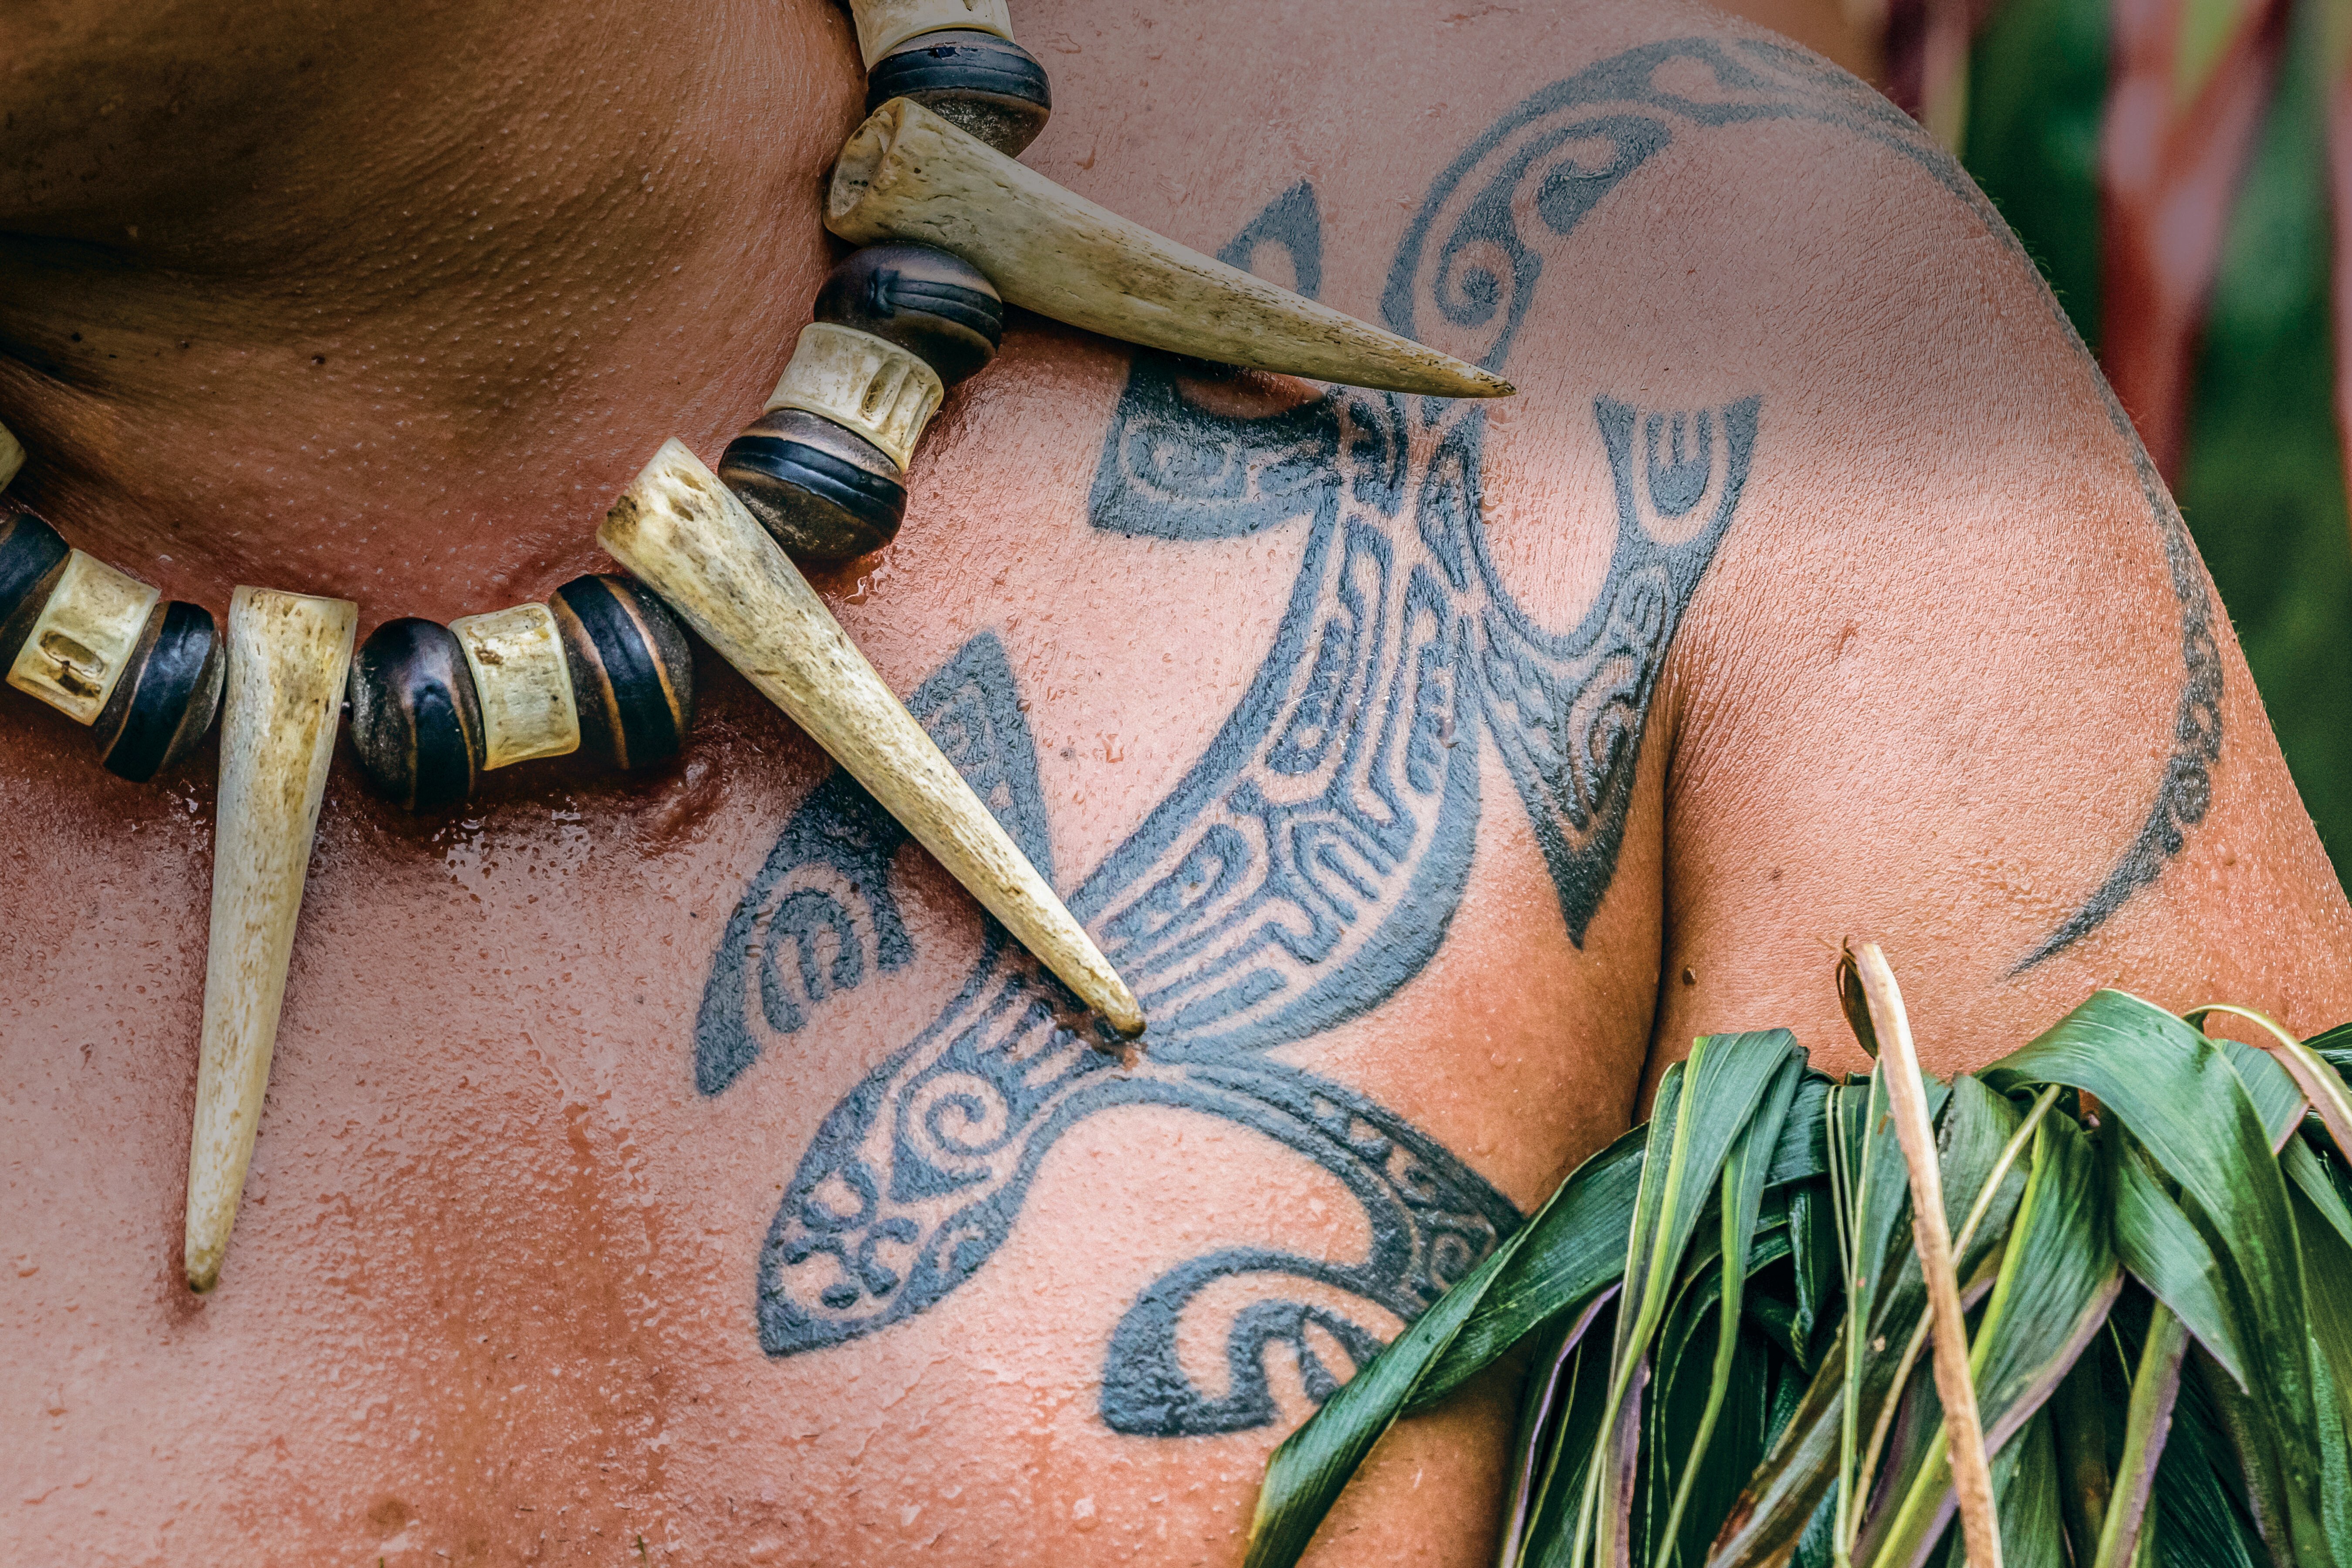 Tatau: The marks of Polynesia | Go Tours Hawaii